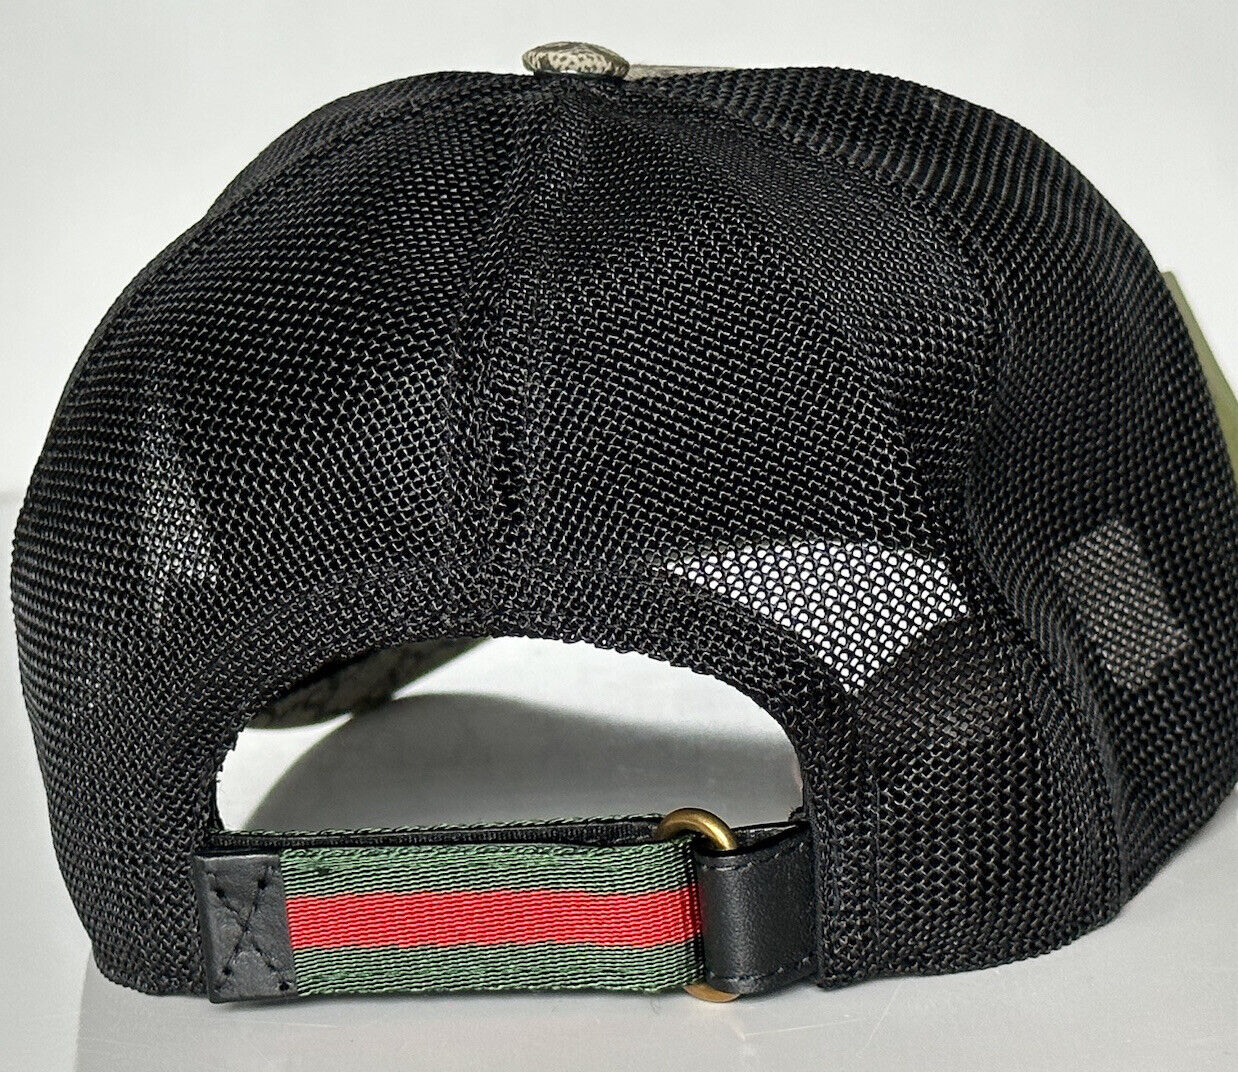 Бейсболка NWT Gucci Tiger GG с принтом Коричневая шляпа L (59 см), производство Италия 426887 